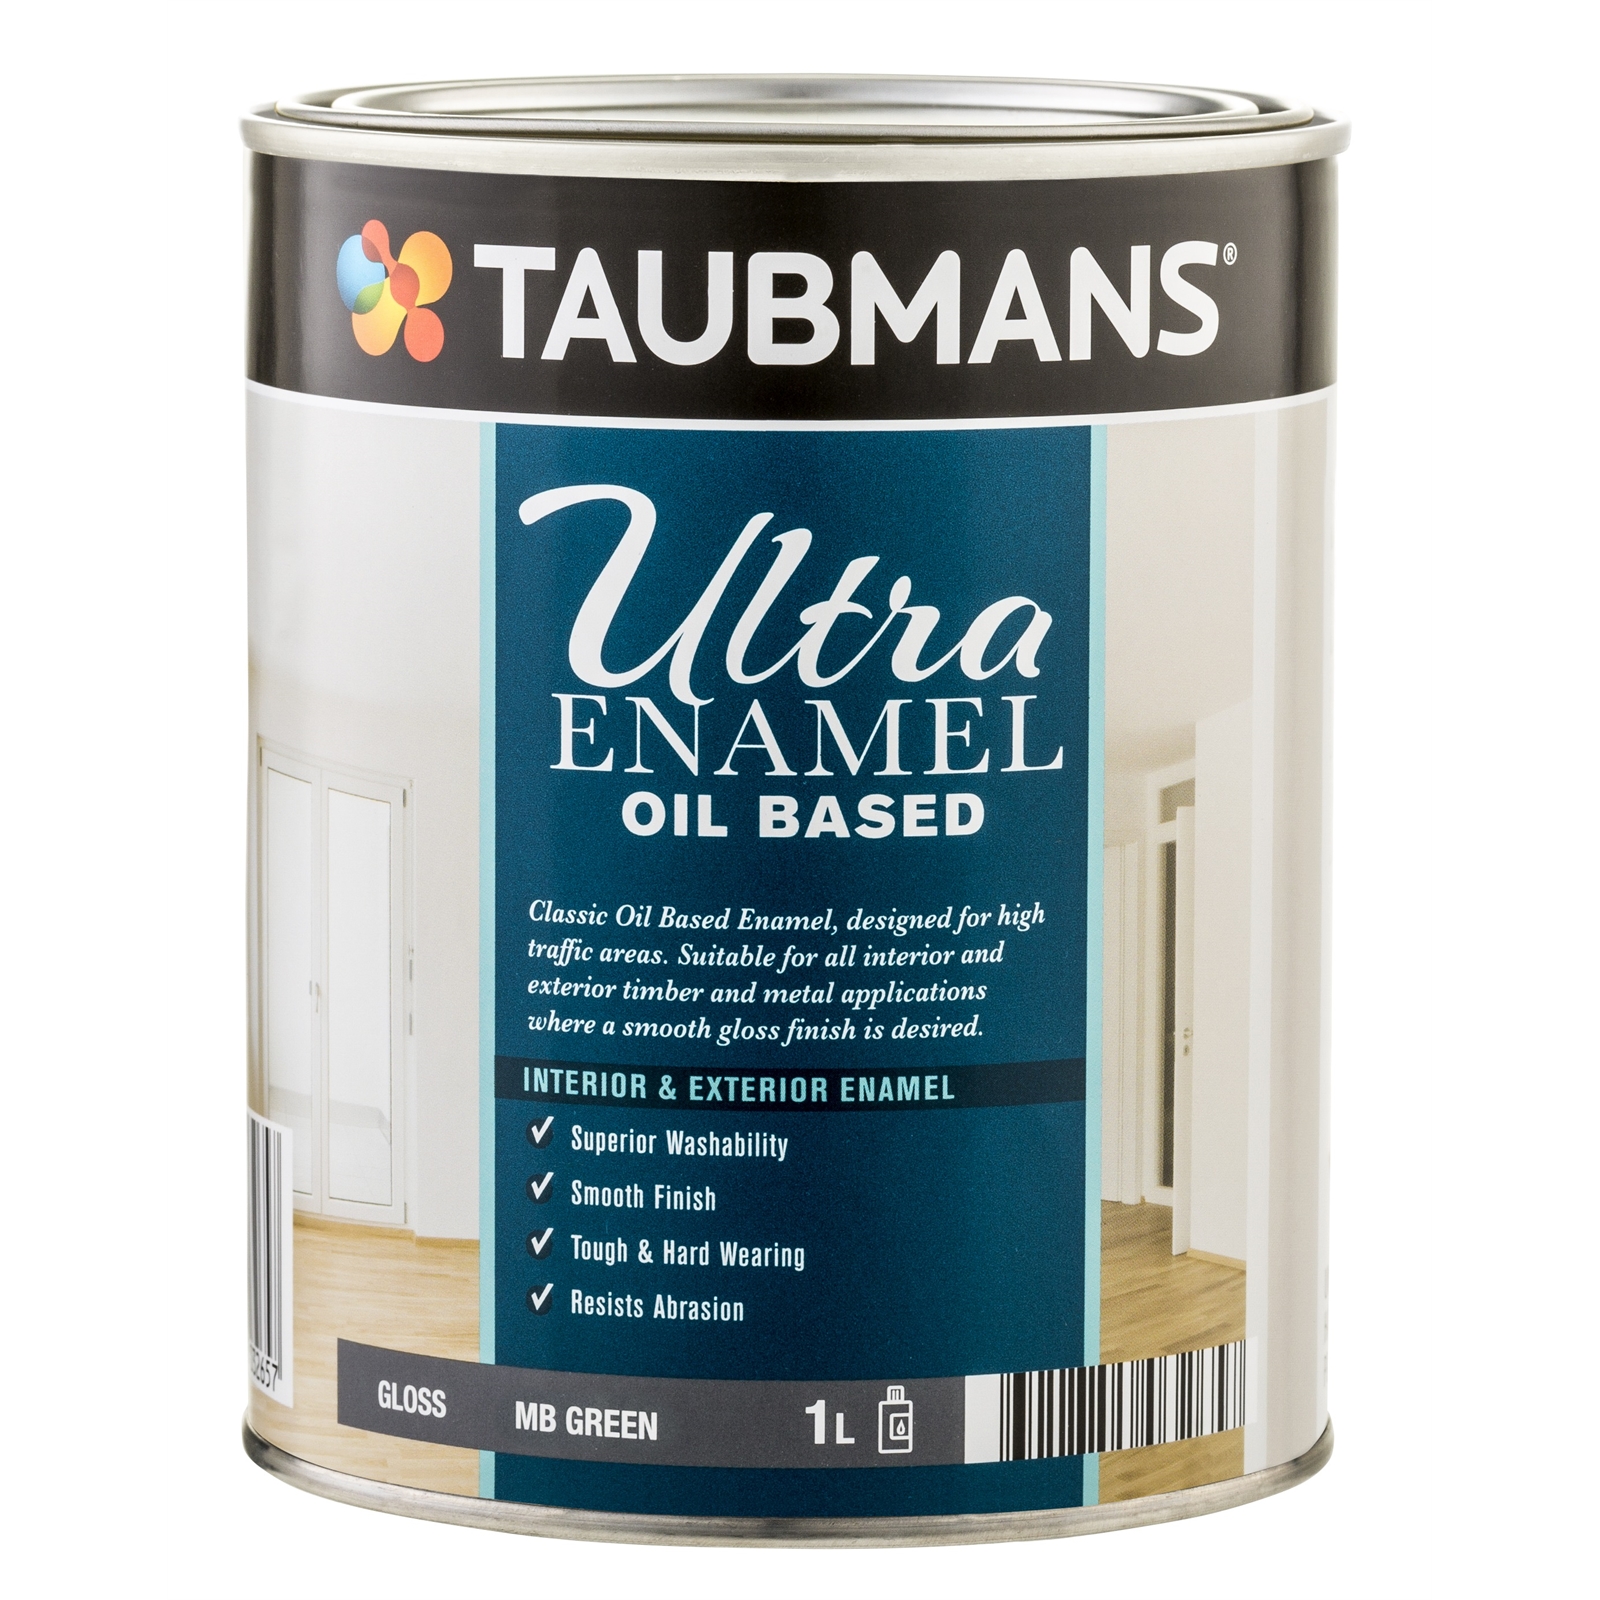 Taubmans Ultra Enamel 1L MB Green Gloss Oil Based Enamel